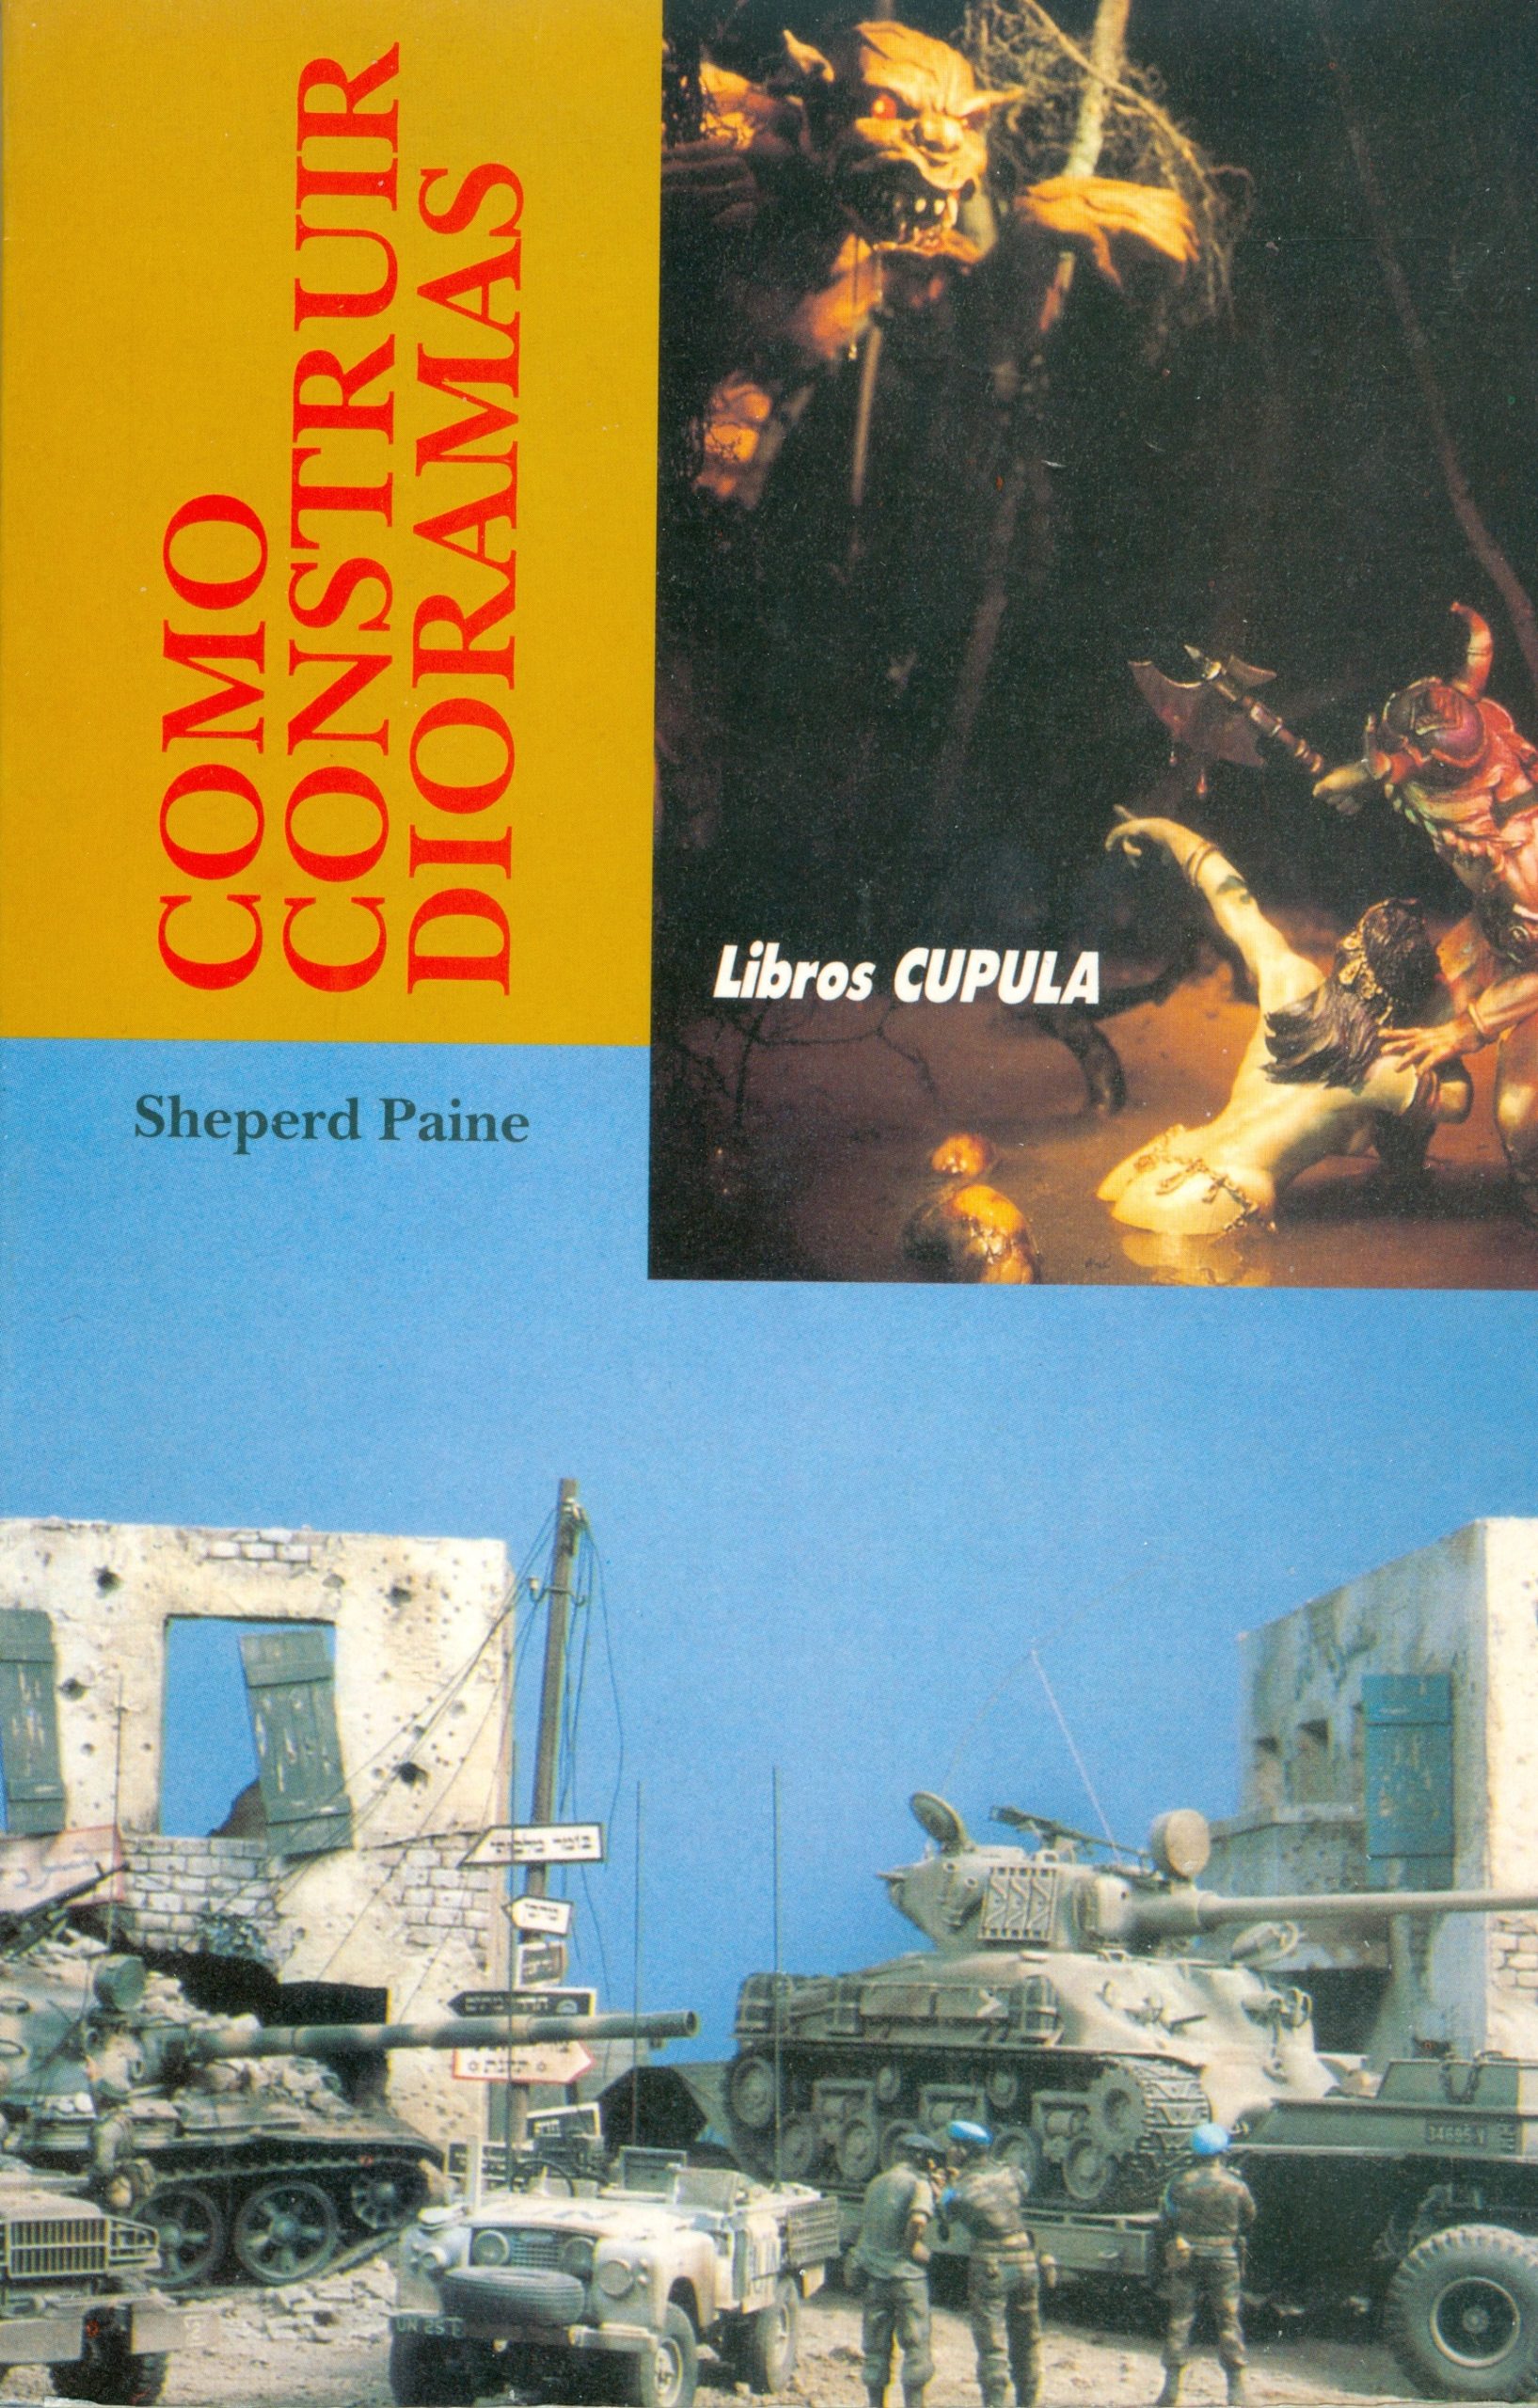 Portada del libro «Cómo construir dioramas» escrito por Sheperd Paine y publicado por la editorial Libros Cúpula (05/1993)